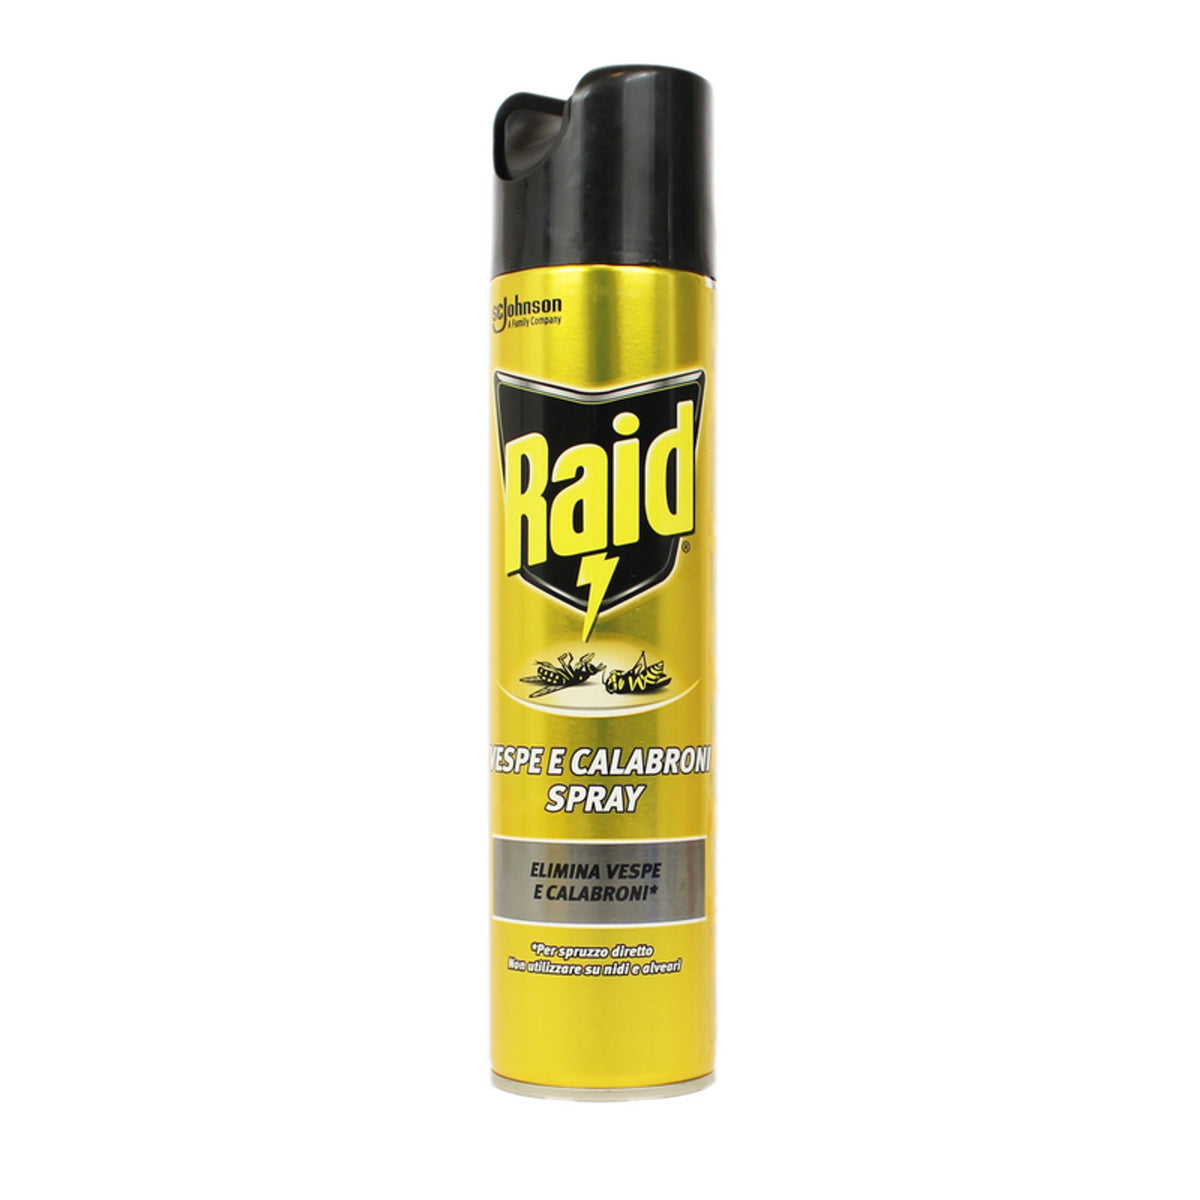 RAID Insecticide Vespe y Calabroni Spray 400 ml